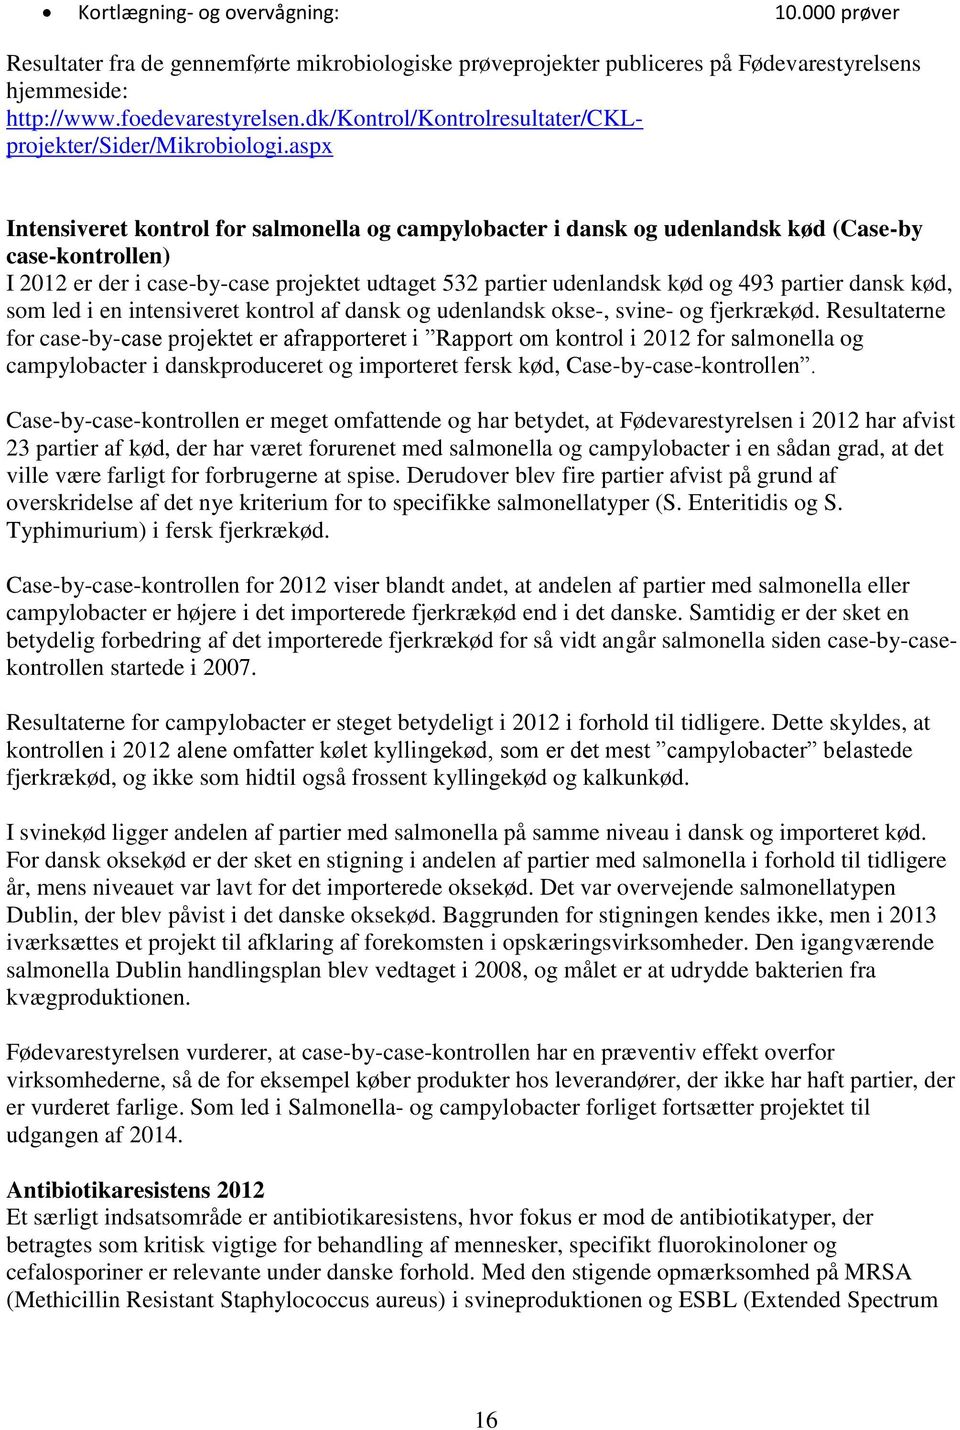 aspx Intensiveret kontrol for salmonella og campylobacter i dansk og udenlandsk kød (Case-by case-kontrollen) I 2012 er der i case-by-case projektet udtaget 532 partier udenlandsk kød og 493 partier